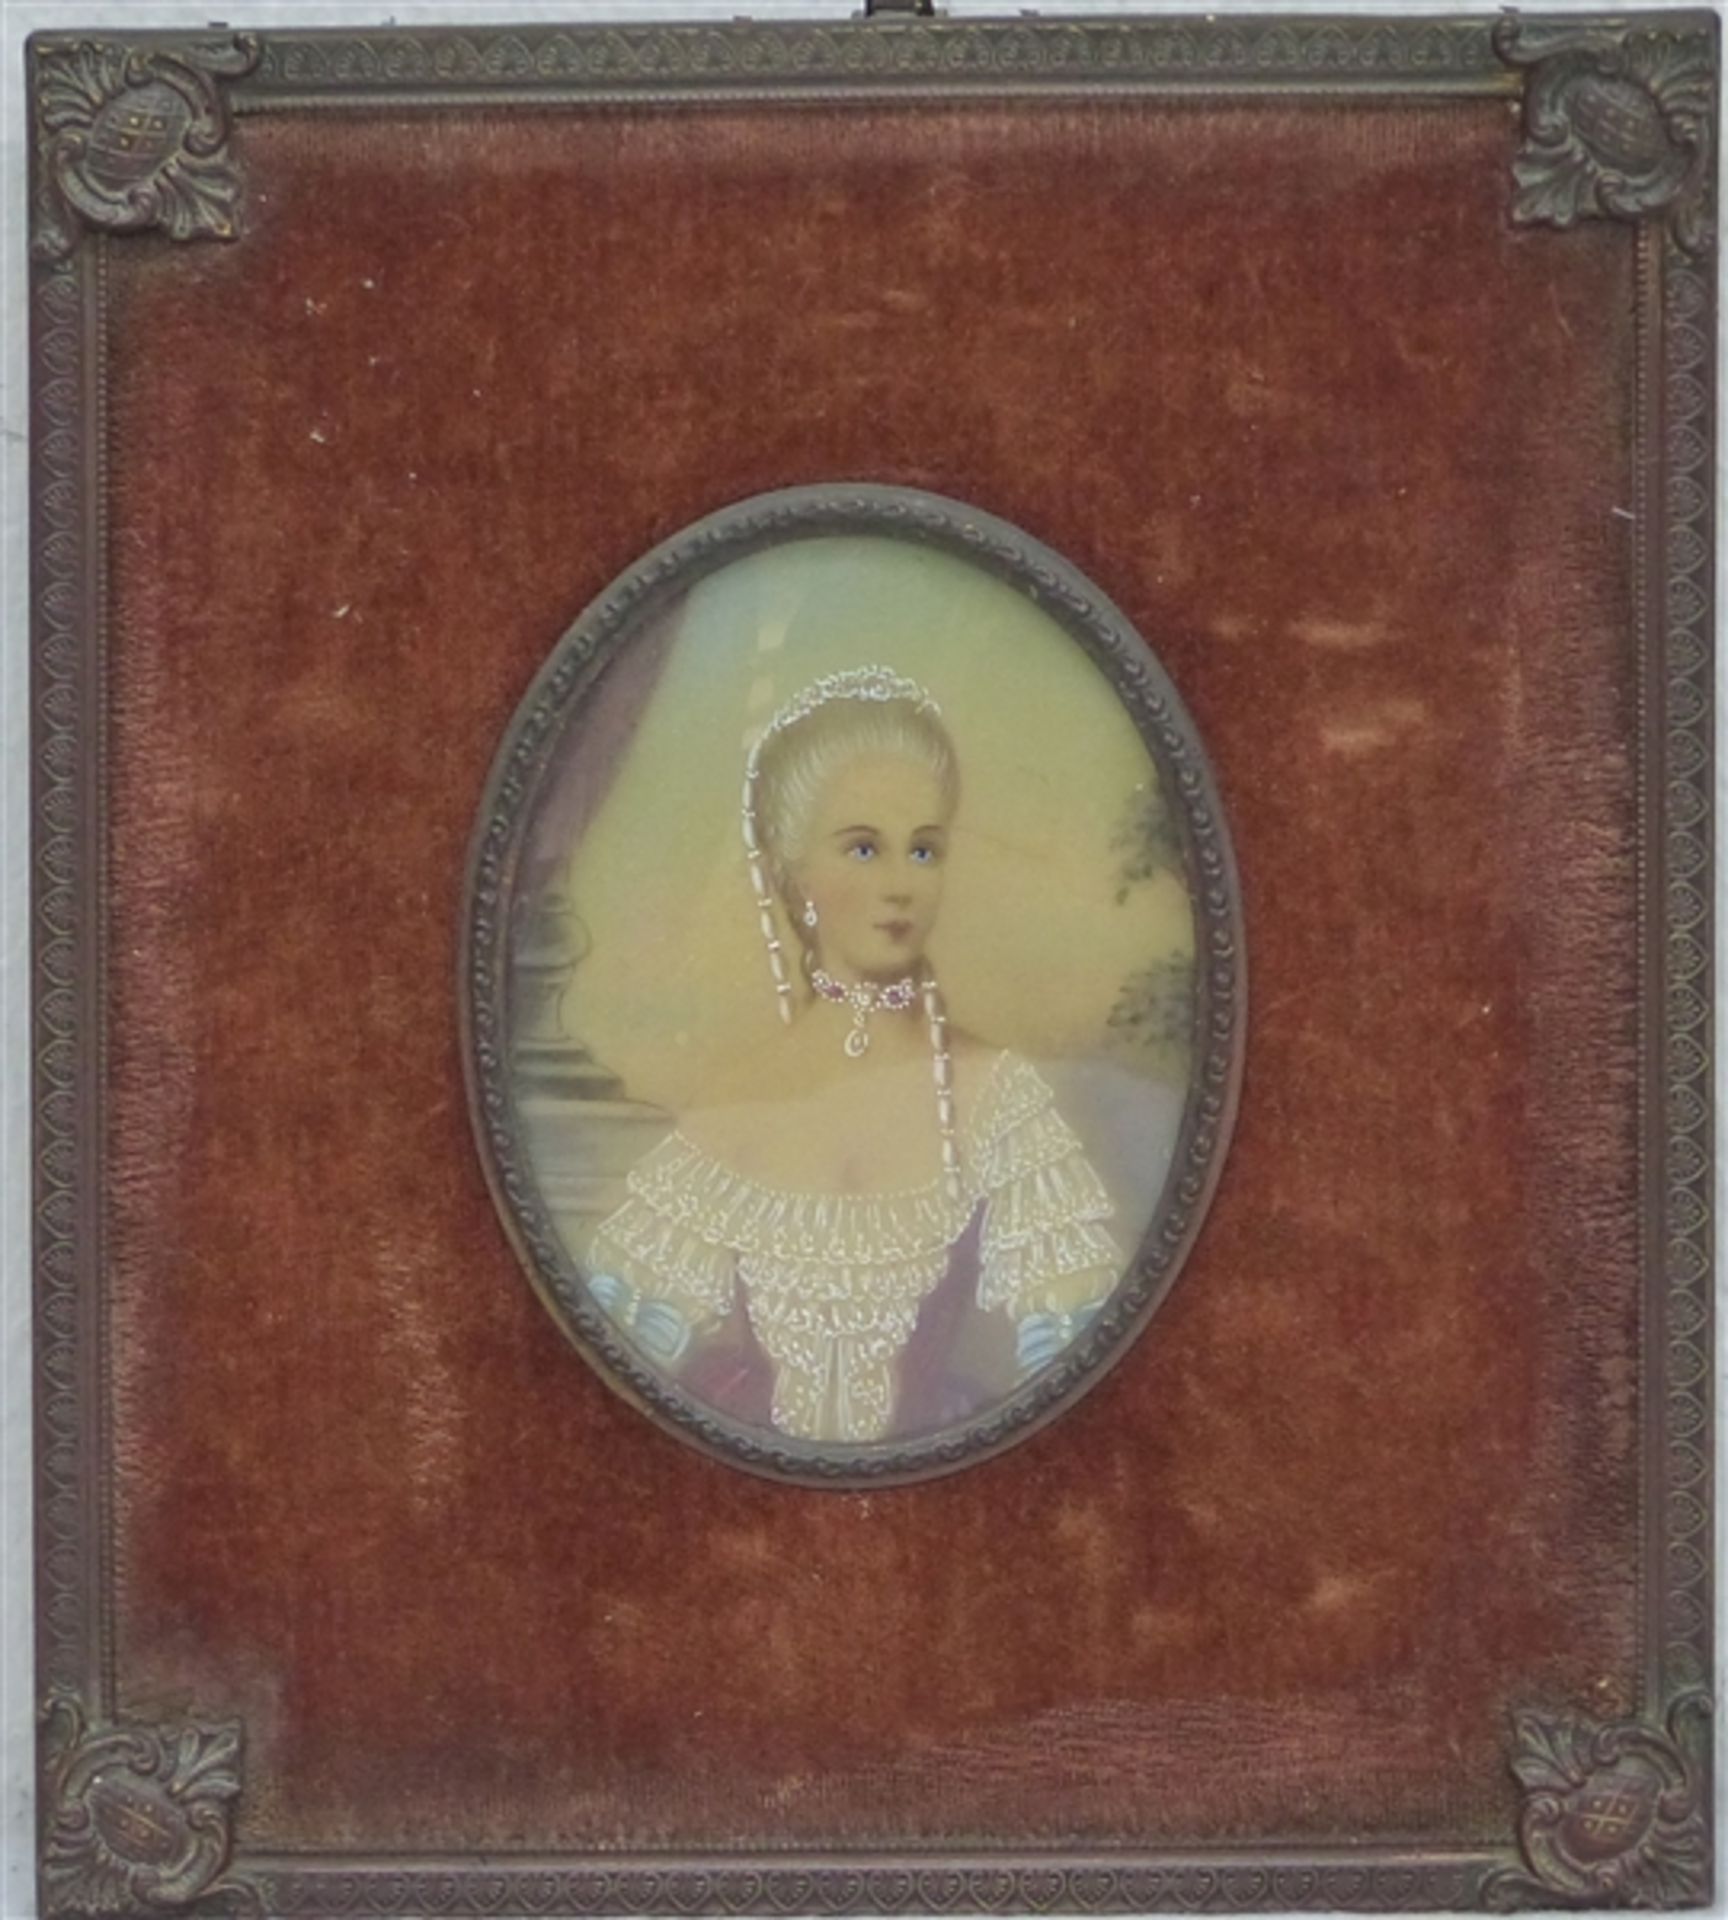 Miniatur, 20. Jh. auf Elfenbein, coloriert, Porträt einer Barock-Dame, 9 x 7 cm, im Rahmen,